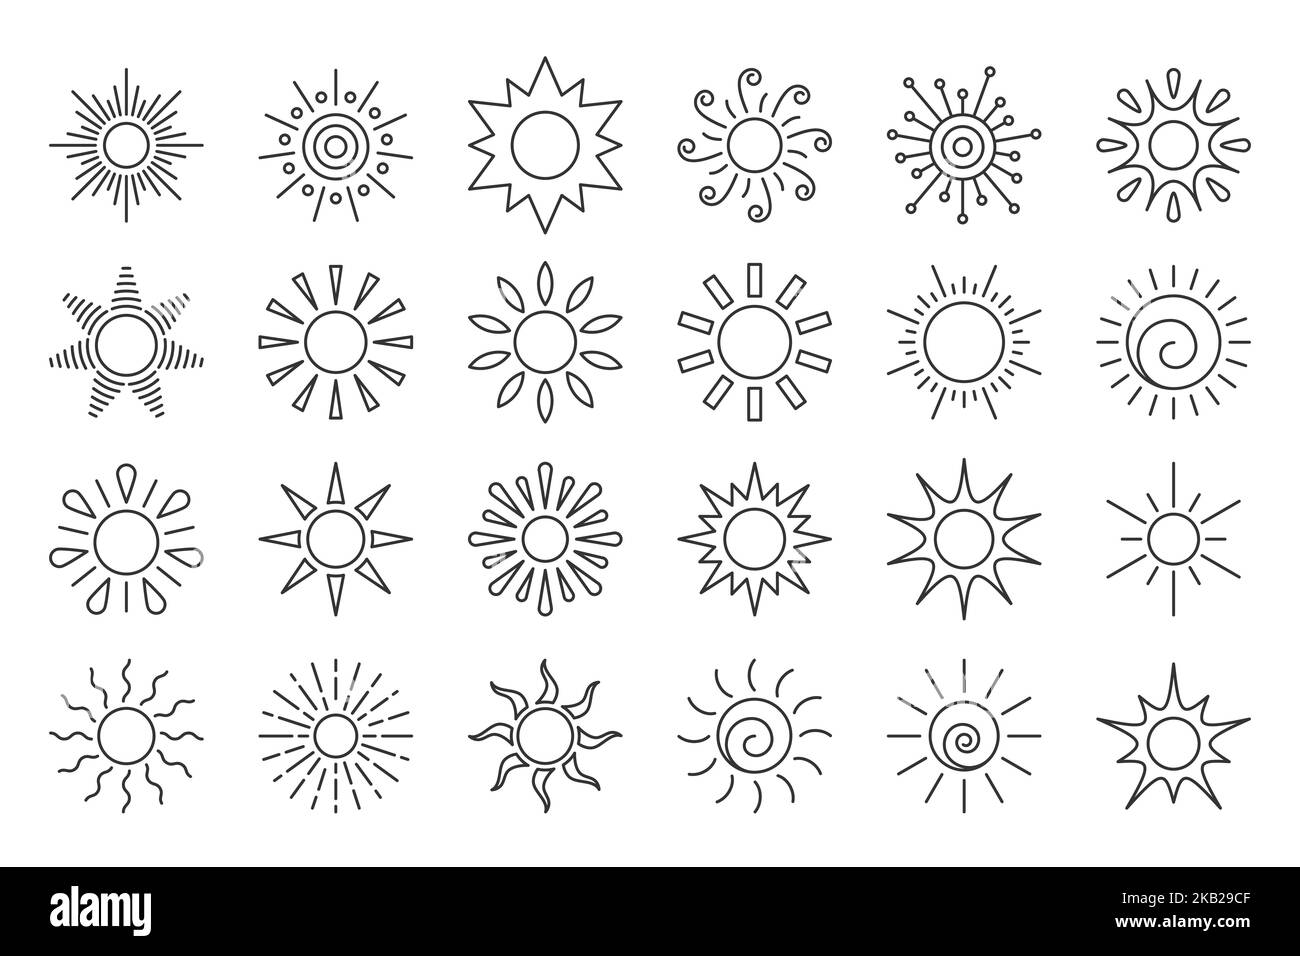 Symbol für die Sonnenlinie eingestellt. Verschiedene Form Sonnenstern. Cartoon Sommer Sonnenlicht Natur Himmel. Einfaches grafisches Sonnenkreiszeichen. Symbol für sonnige Wärmestrahlen der Wetter-App. Logo Sonnenaufgang Sonnenuntergang isoliert auf Weiß. Stock Vektor